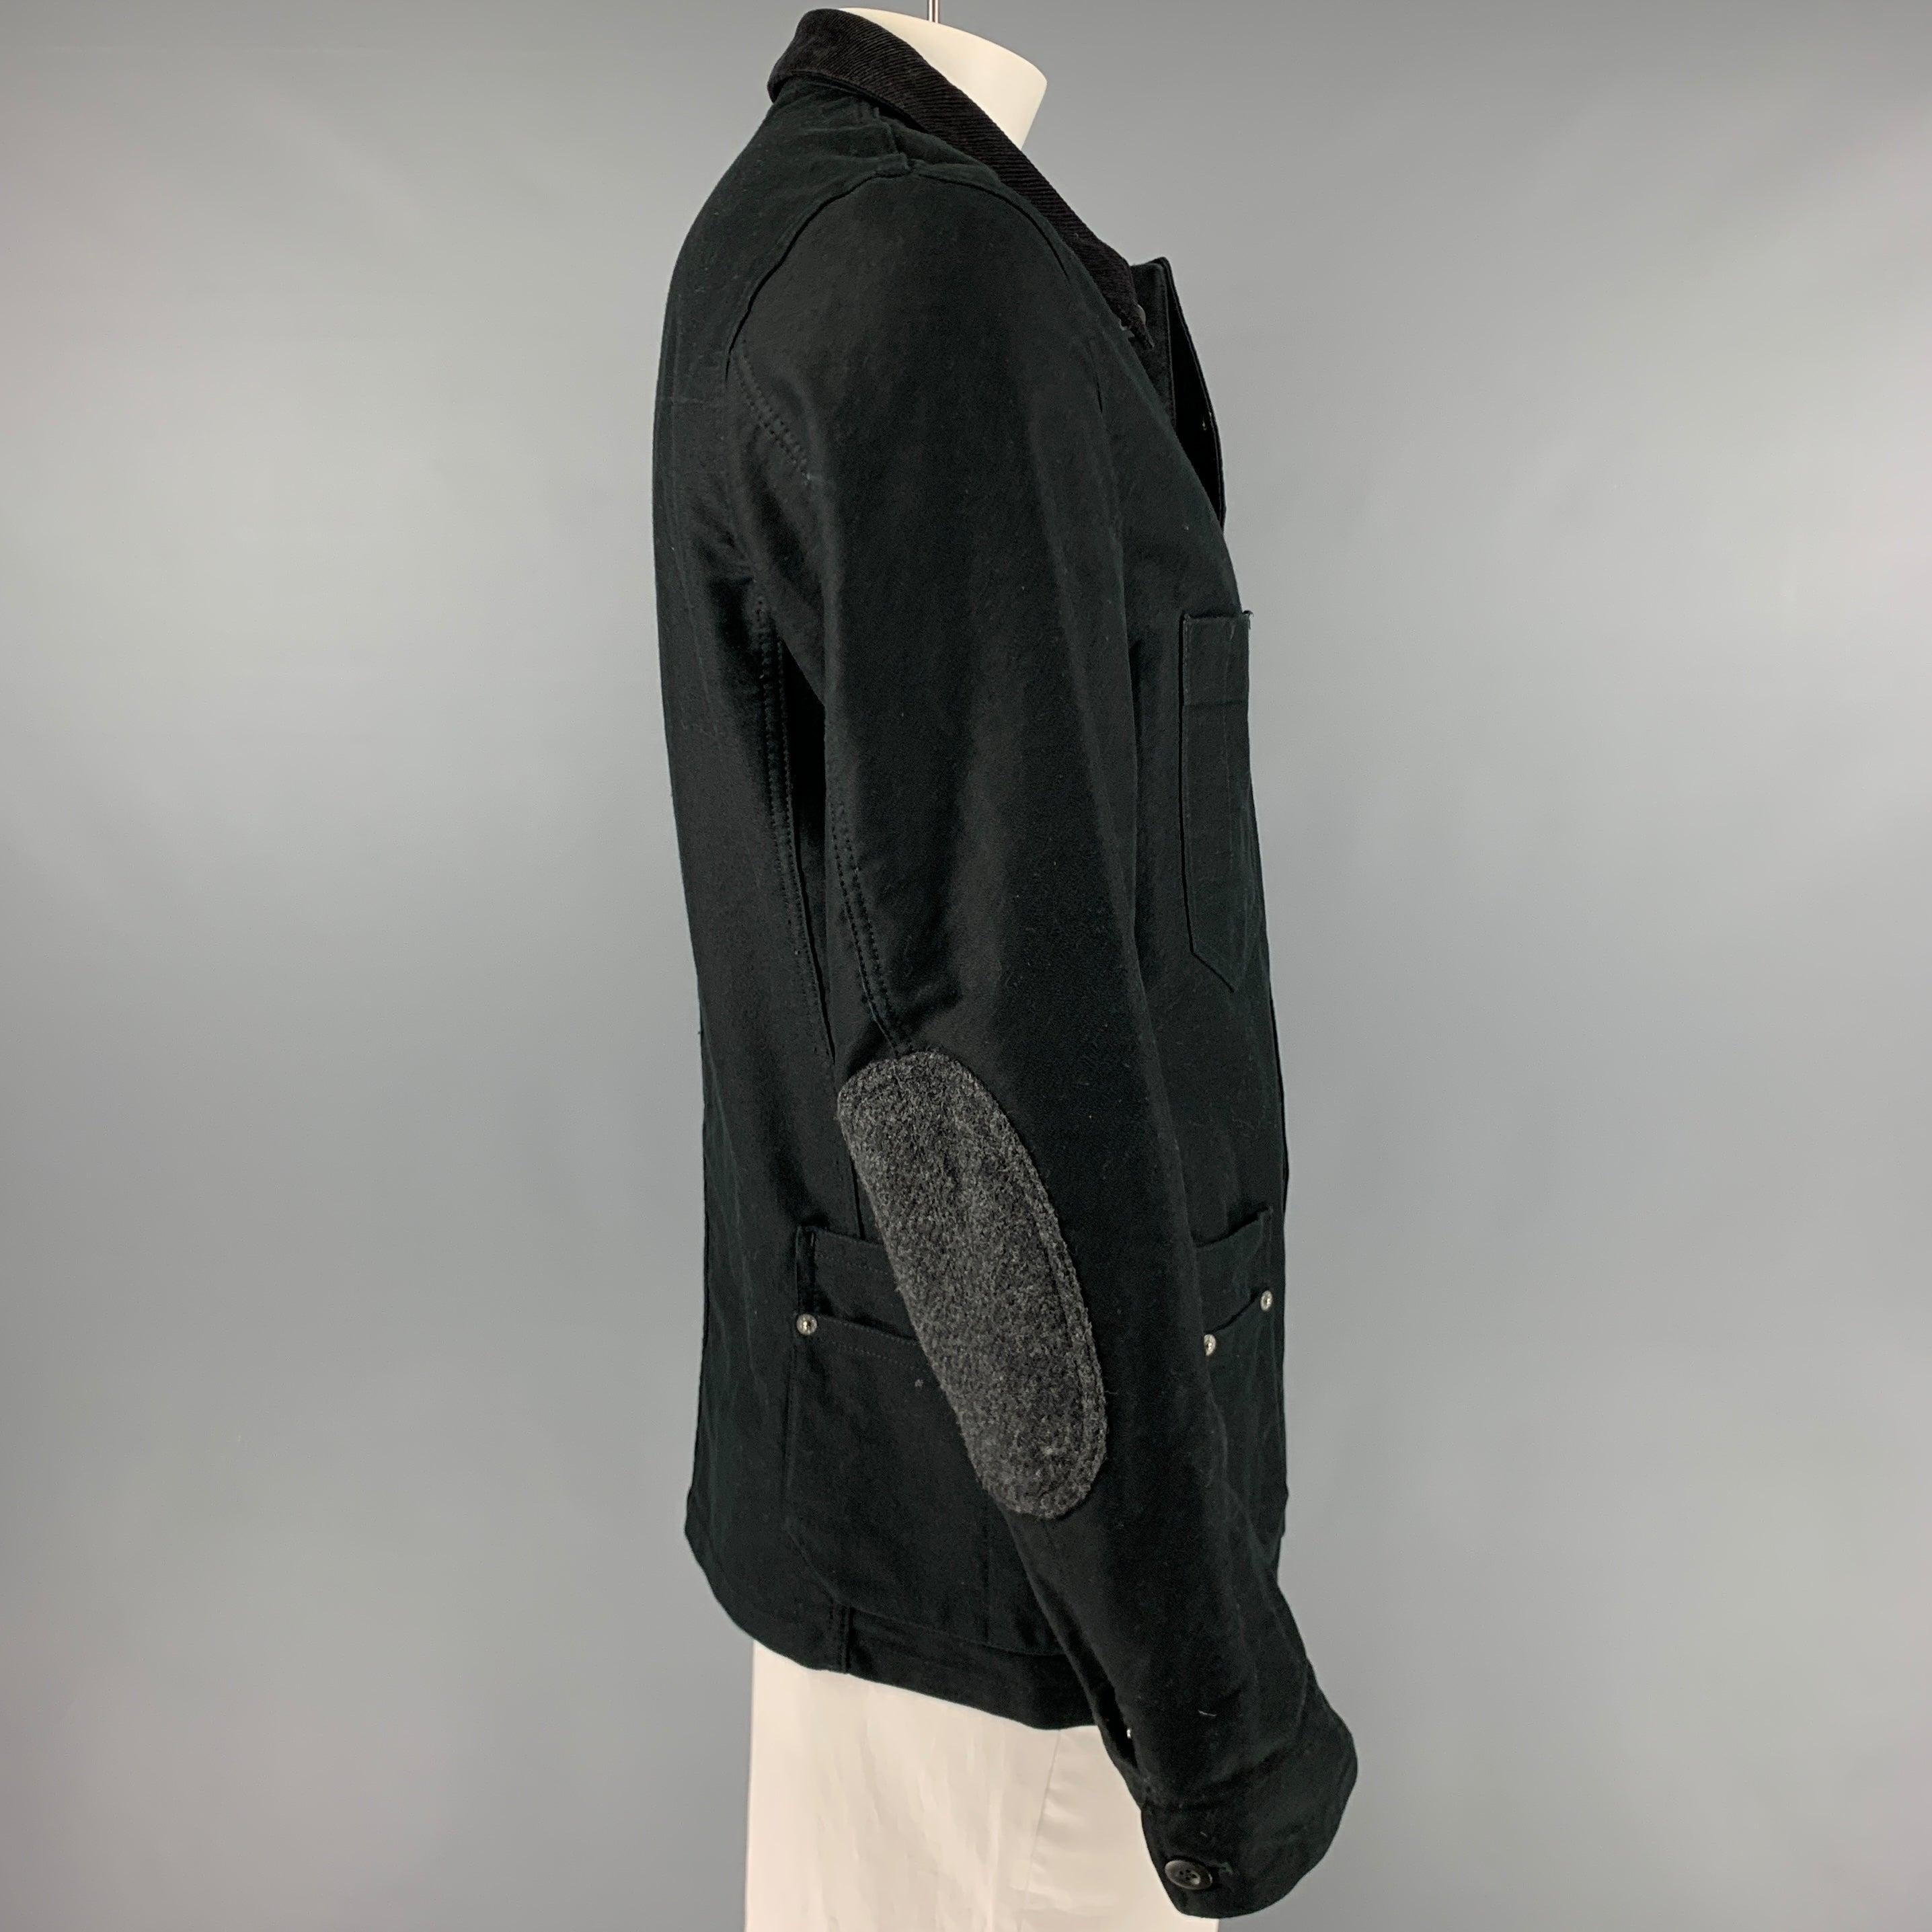 JUNYA WATANABE Jacke
aus schwarzem Baumwollstoff im Worker-Stil mit mehreren praktischen Taschen, Ledertaschen, geripptem Kragen, Ellbogenaufnähern und Knopfverschluss. Made in Japan Ausgezeichneter gebrauchter Zustand. Leichte Spuren am